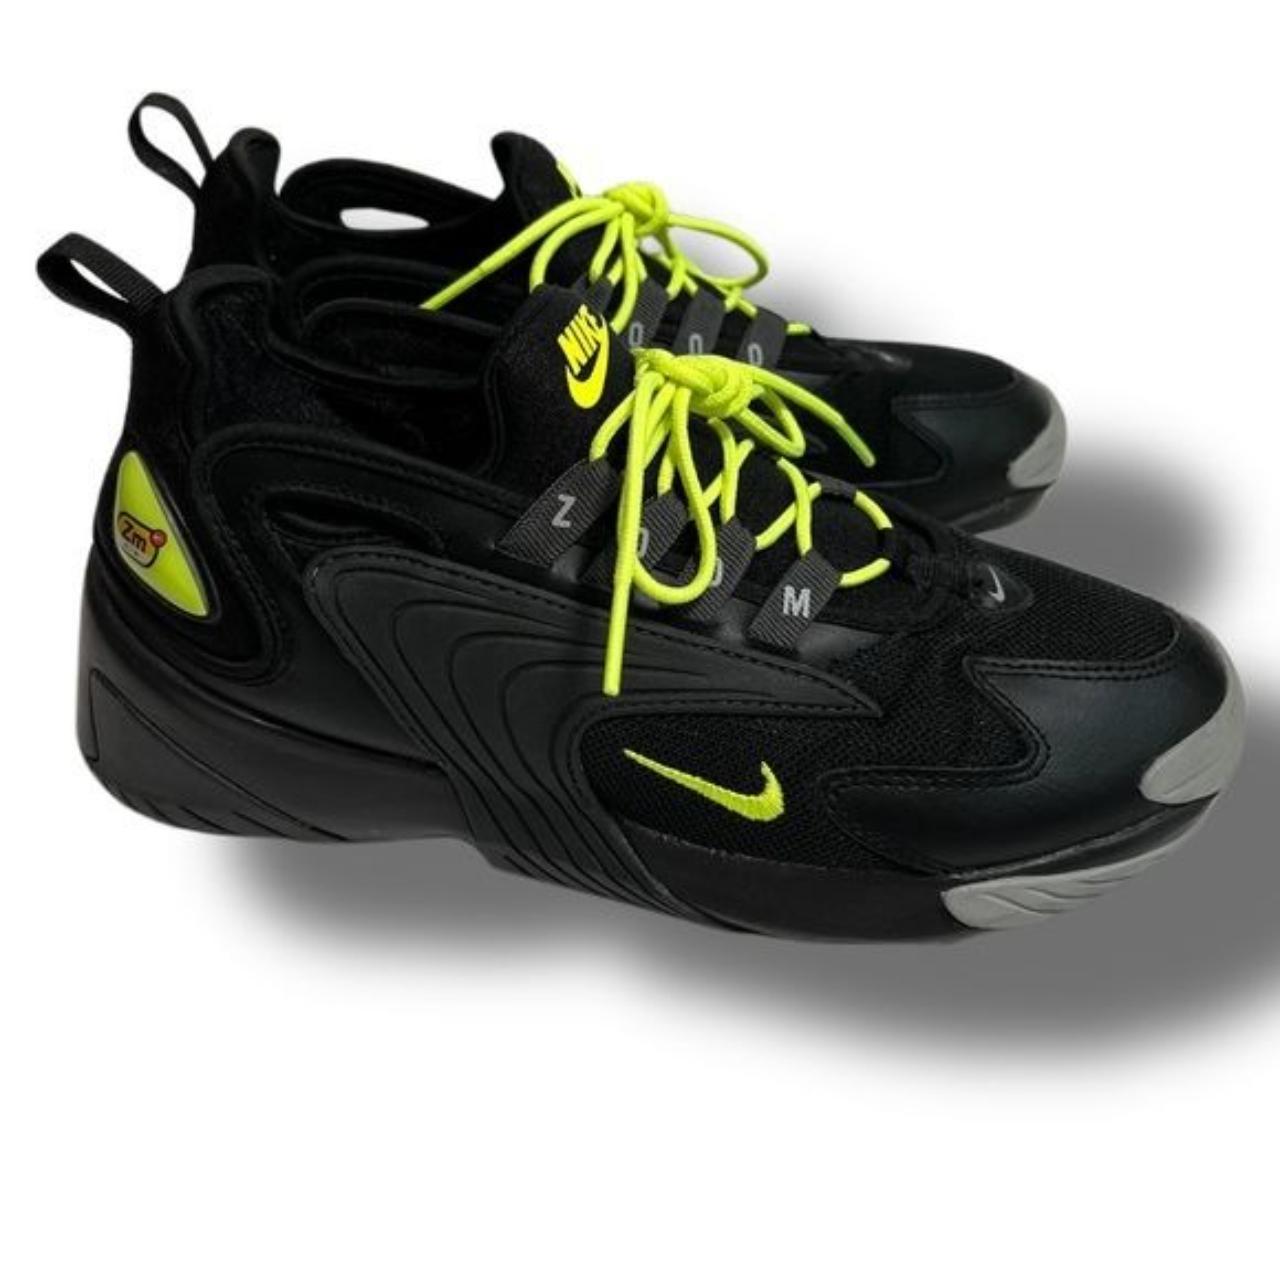 Clásico Elegancia idiota Nike Zoom 2000 Green and Black Sneakers Nike Zoom... - Depop